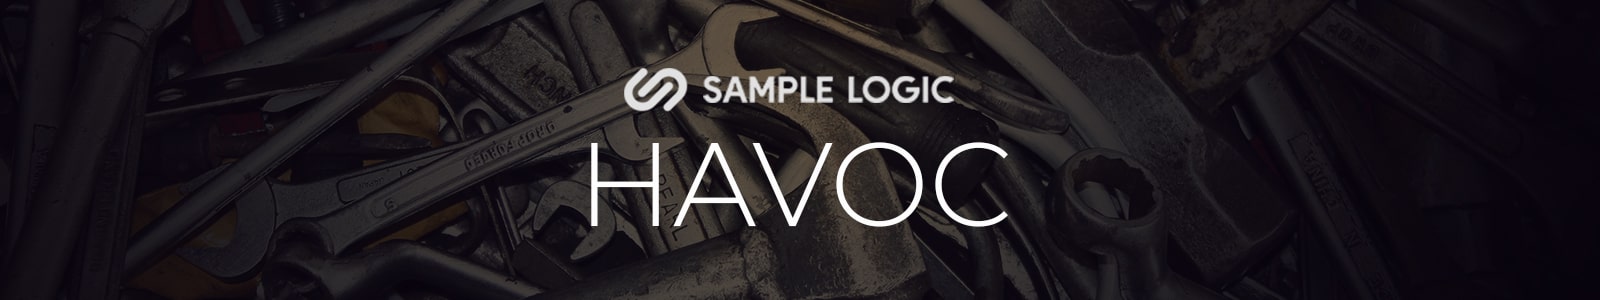 HAVOC by sample logic